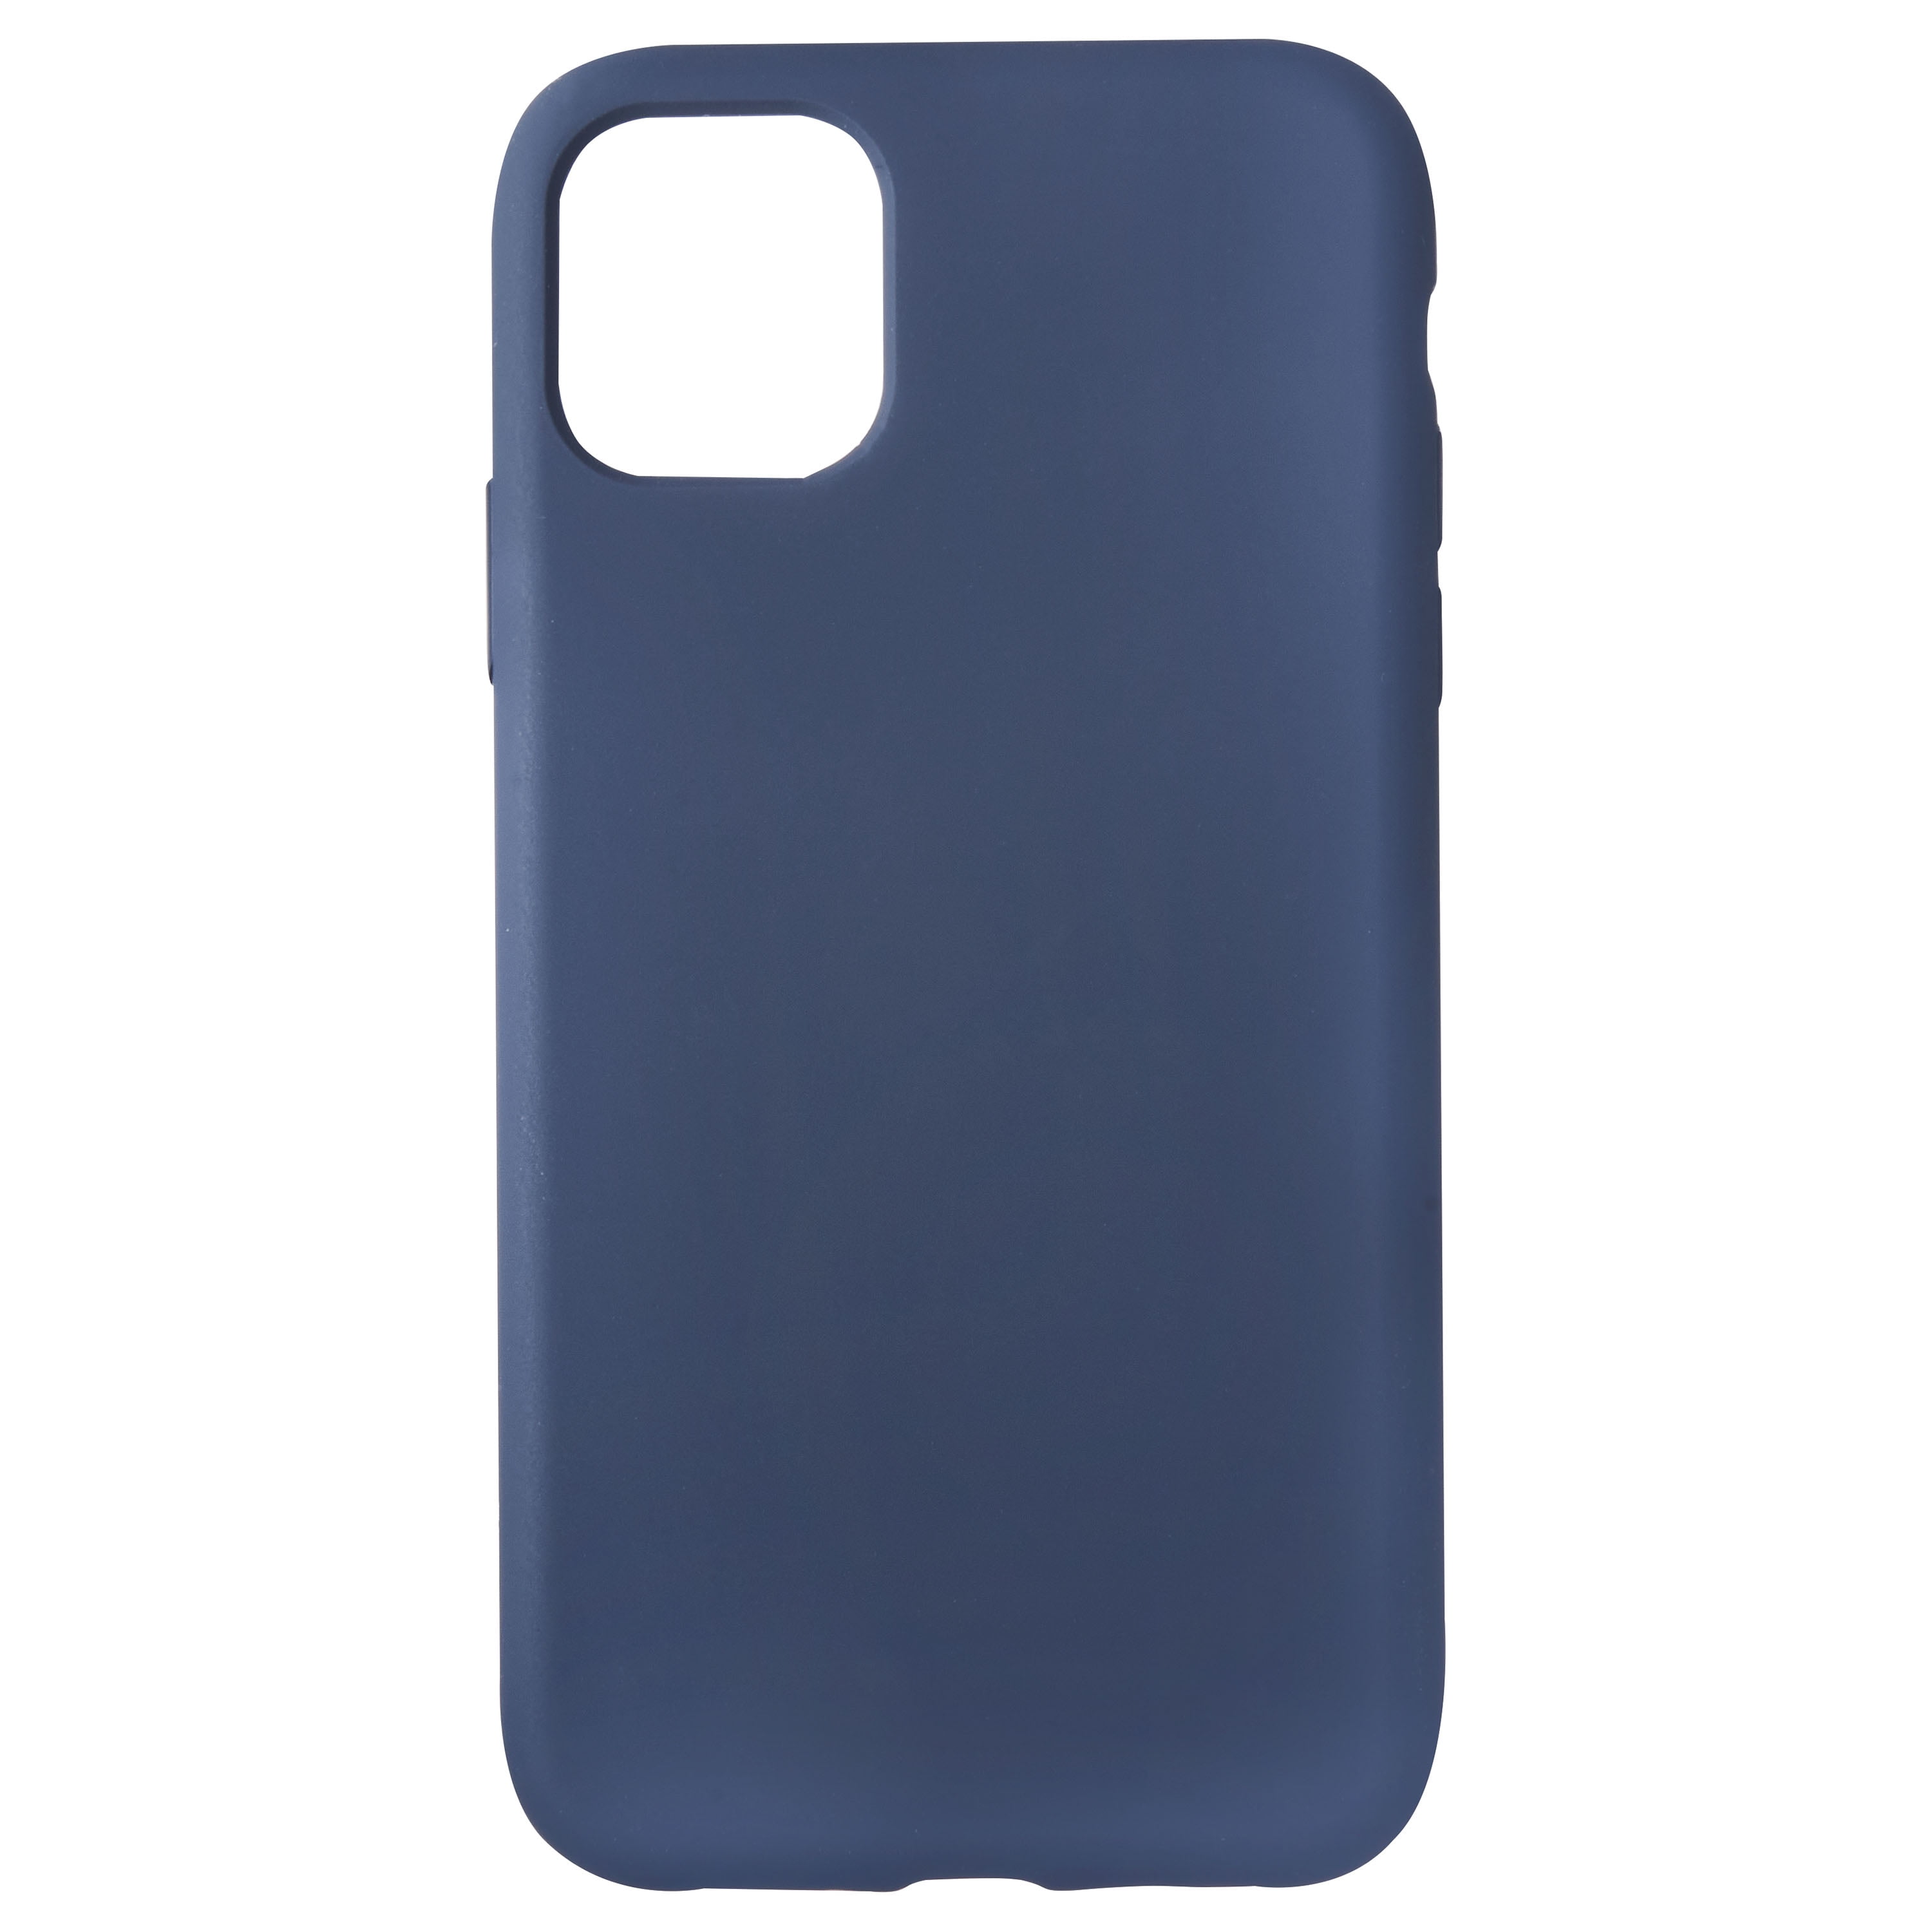 Olixar Soft Silicone iPhone 11 Pro Case - Pastel Blue